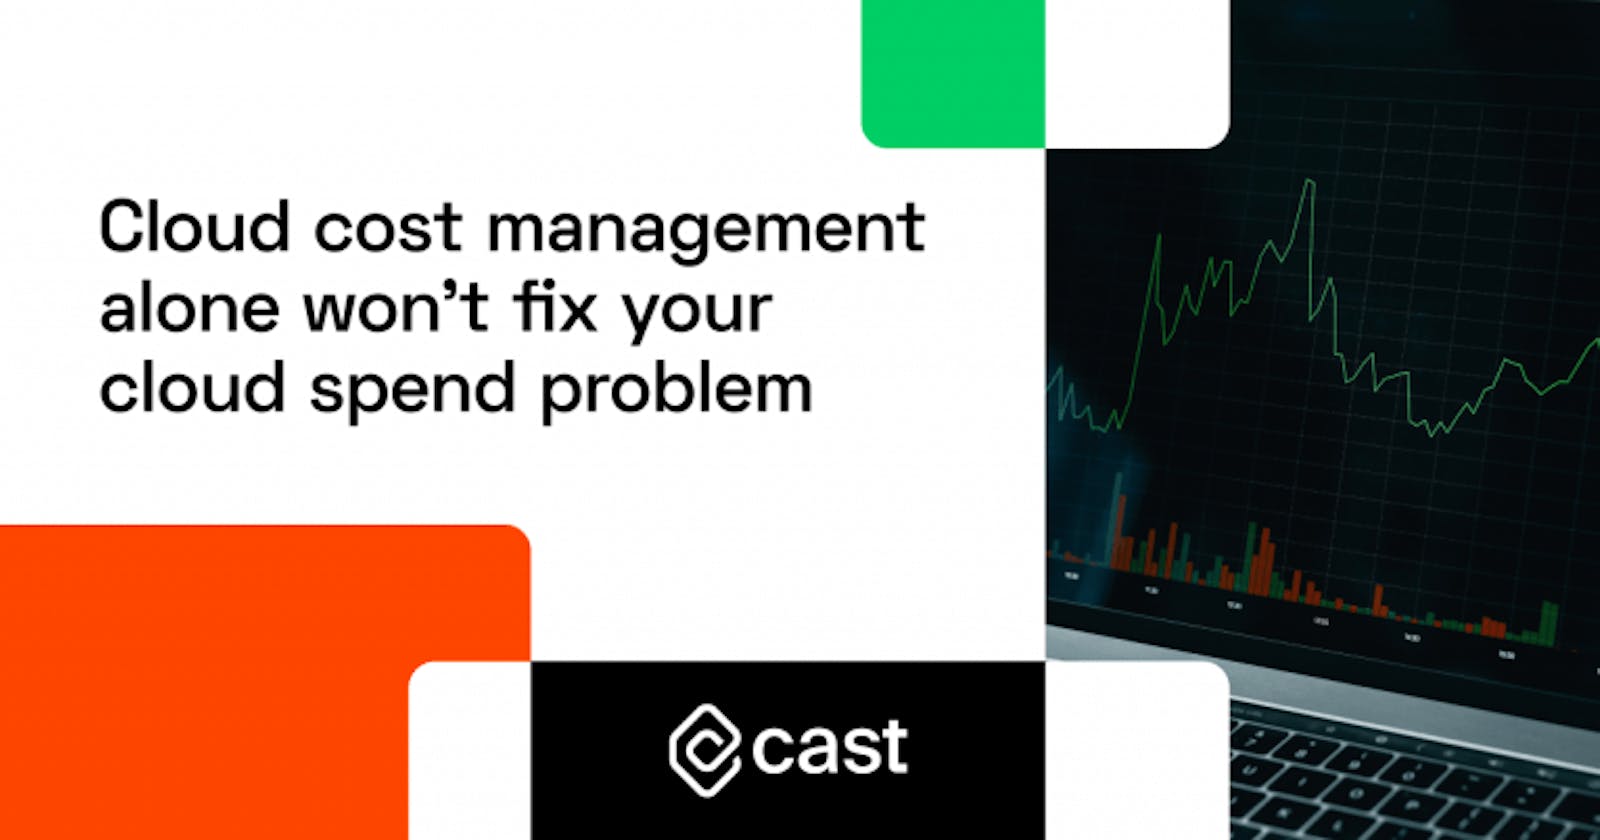 Cloud cost management alone won't fix your cloud spend problem